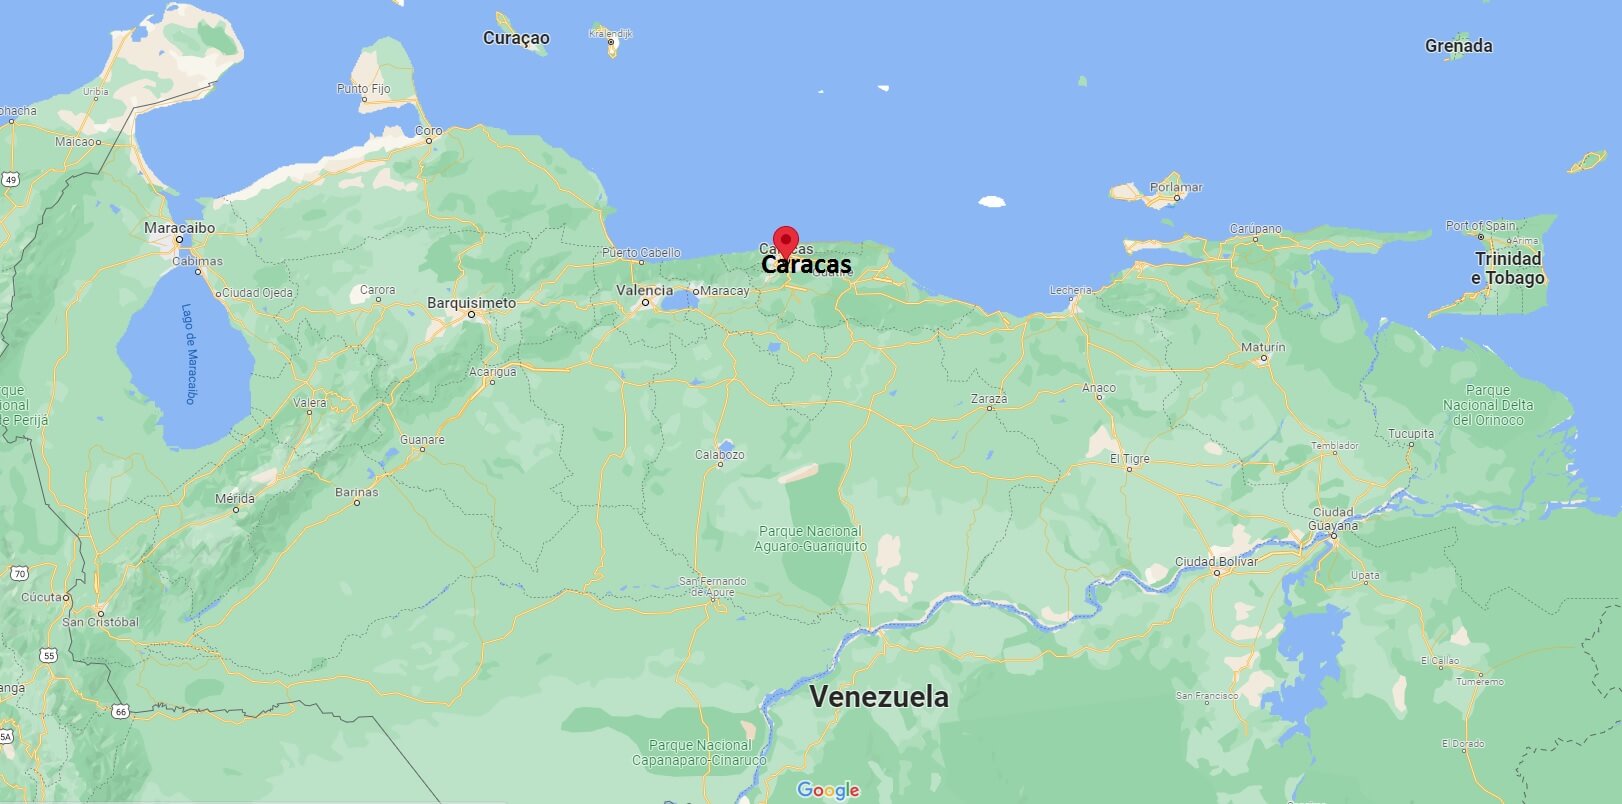 In che provincia si trova Caracas